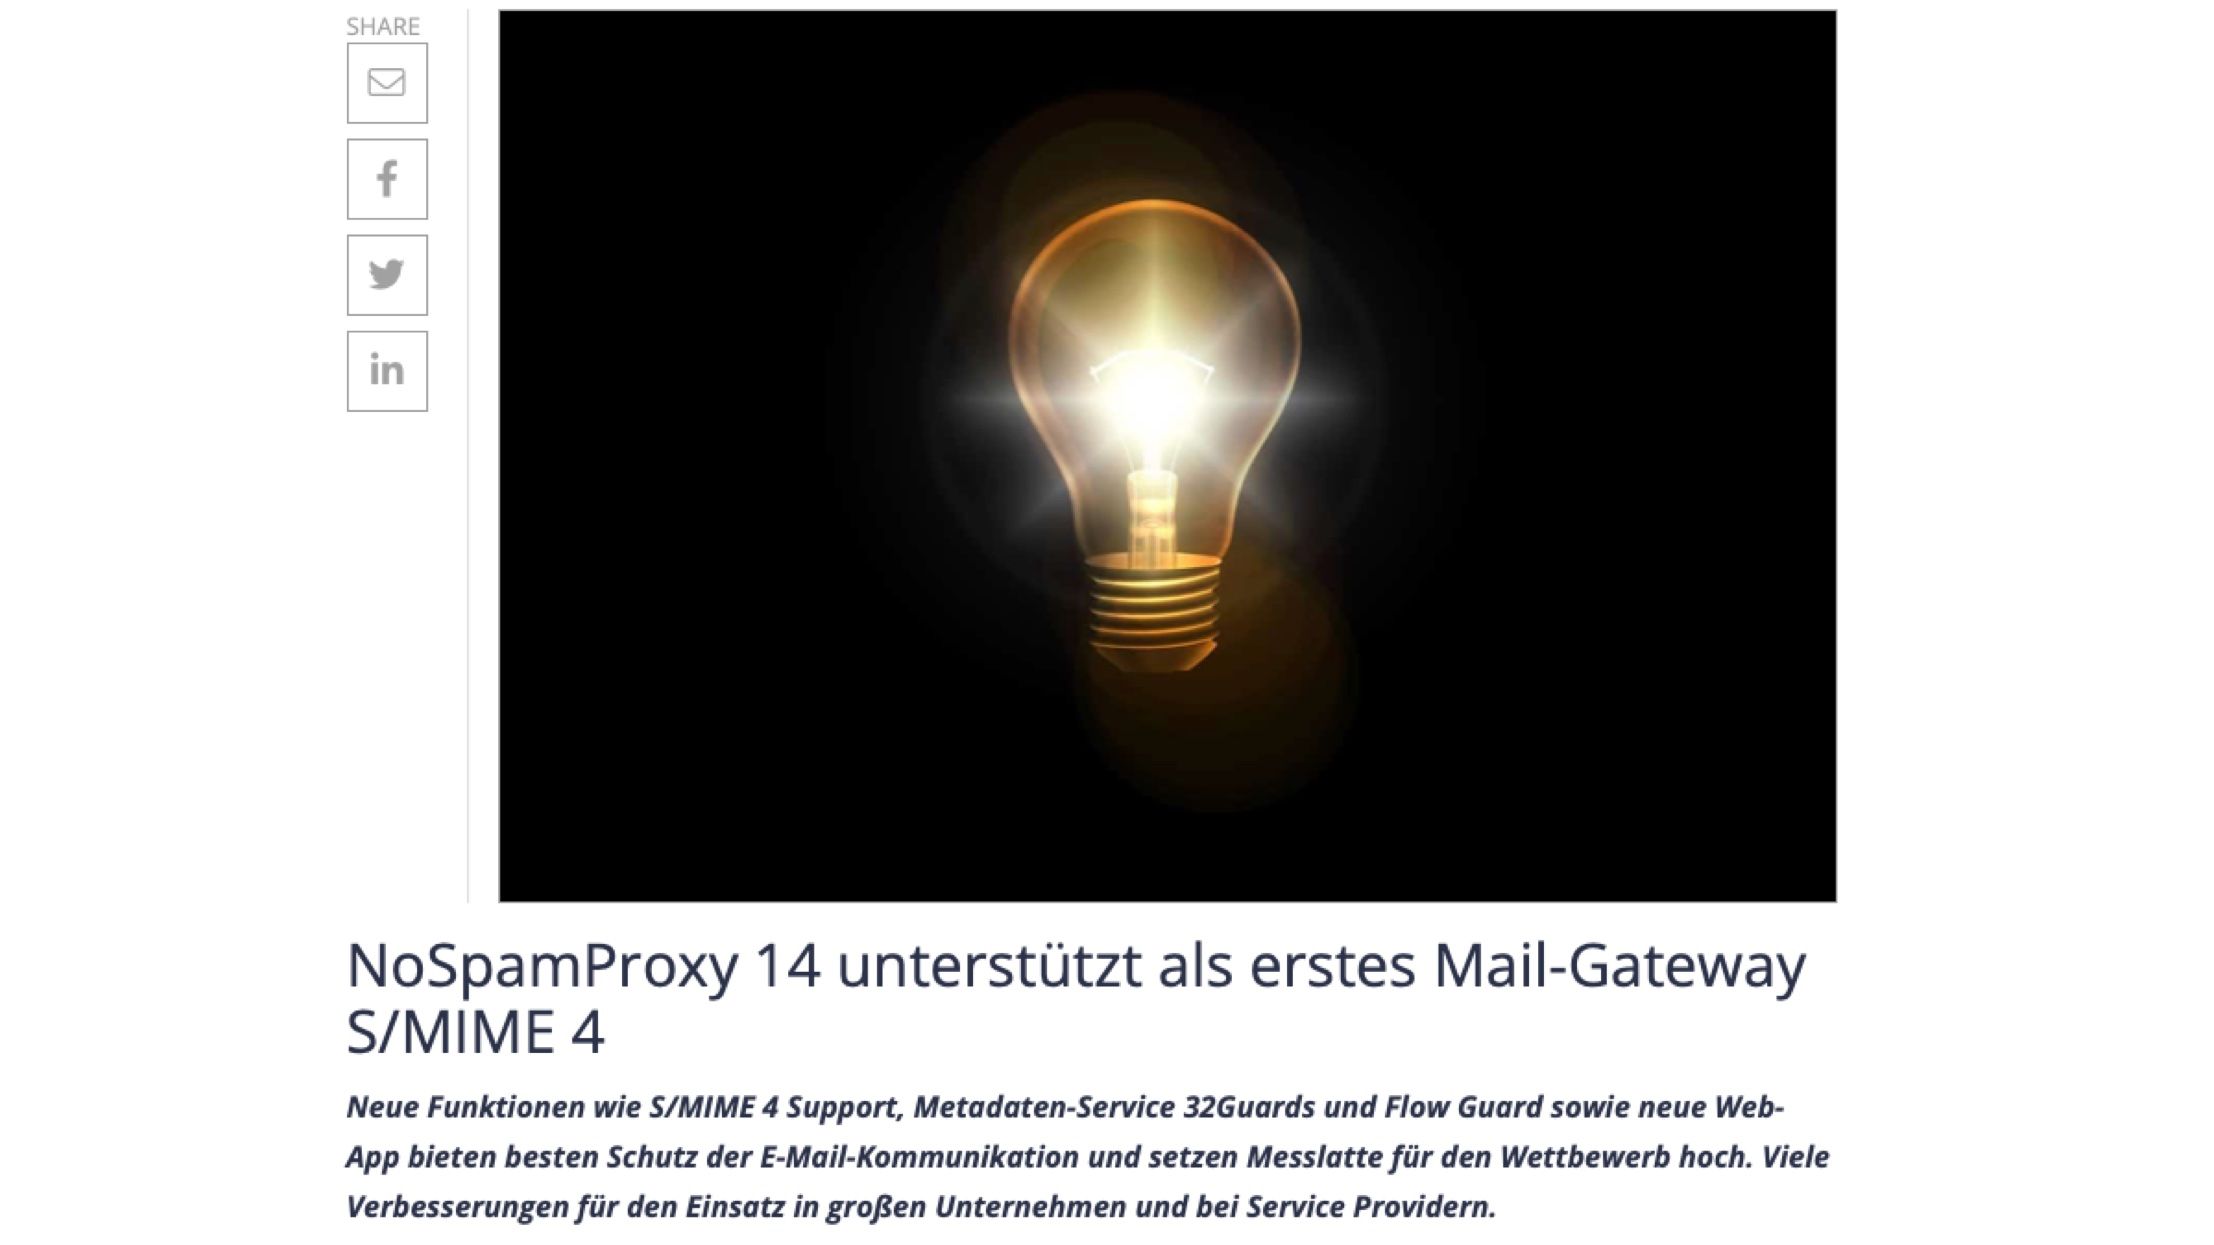 Artikel "NoSpamProxy 14 unterstützt als erstes Mail-Gateway S/MIME 4" in all-about-security